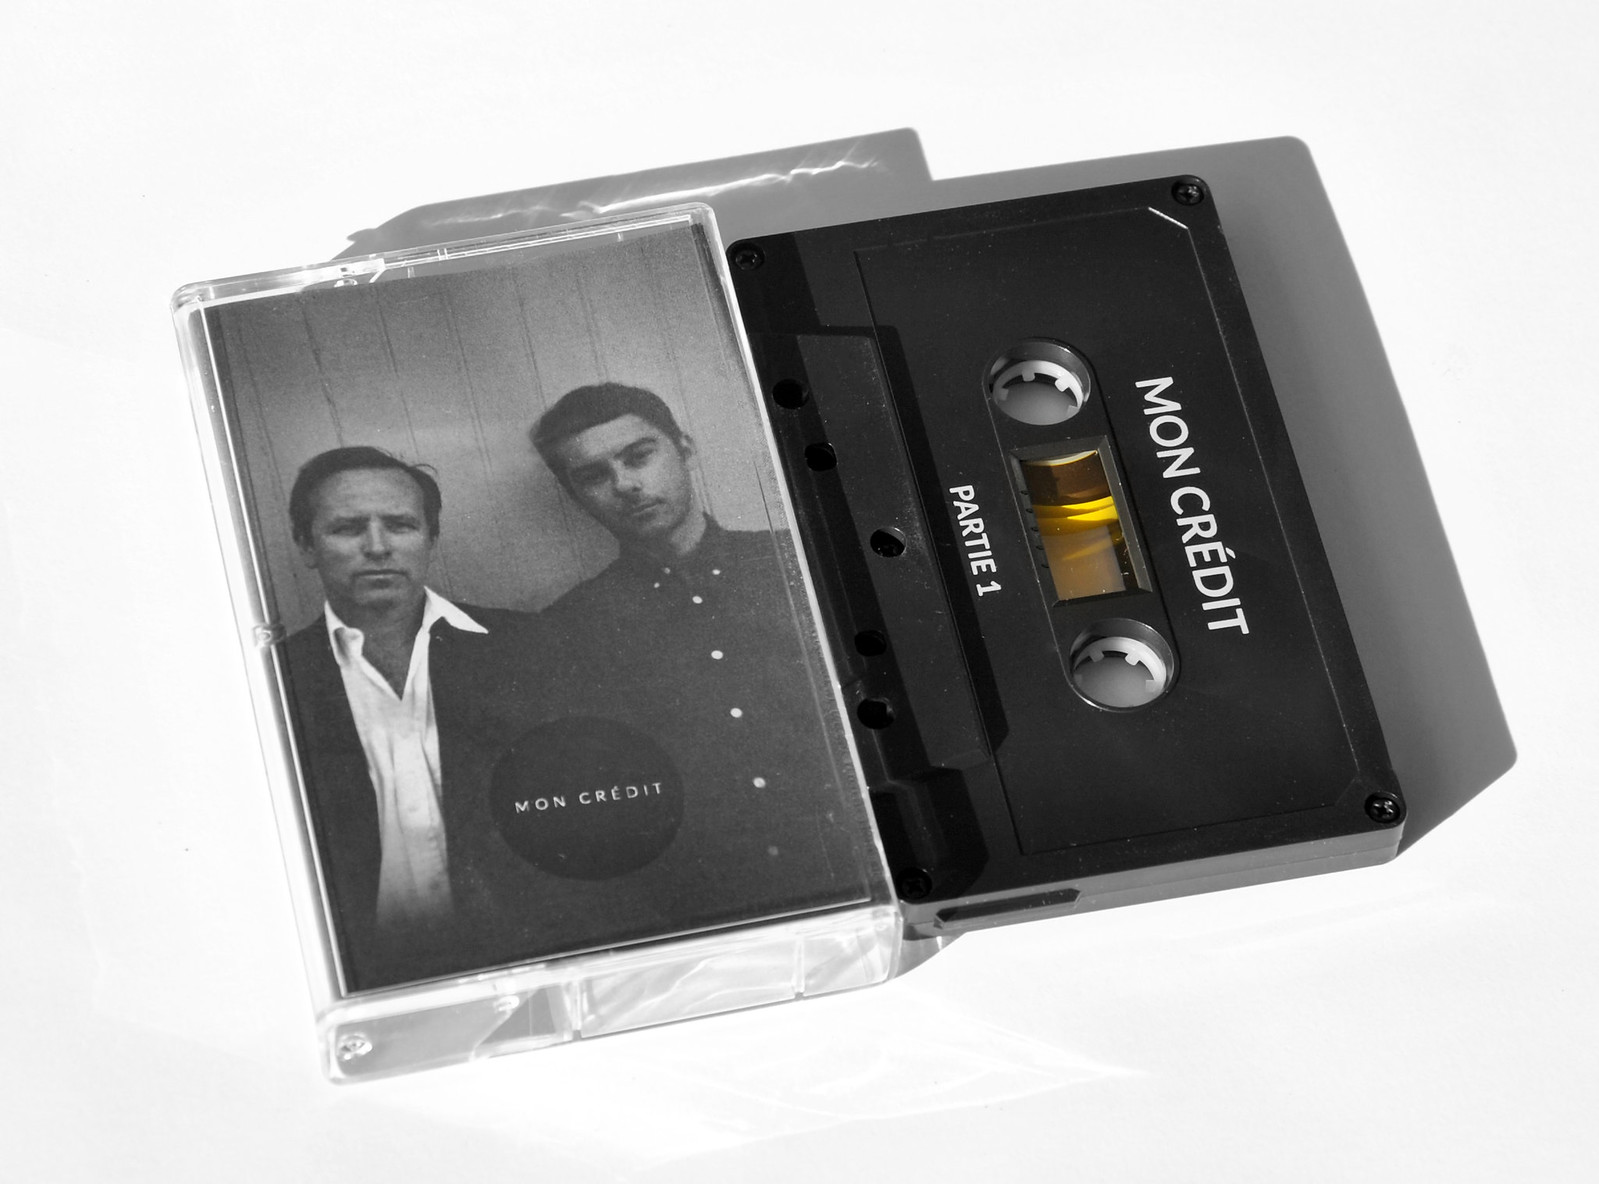 j-allaire-d-lavaysse-mon-credit-cassette